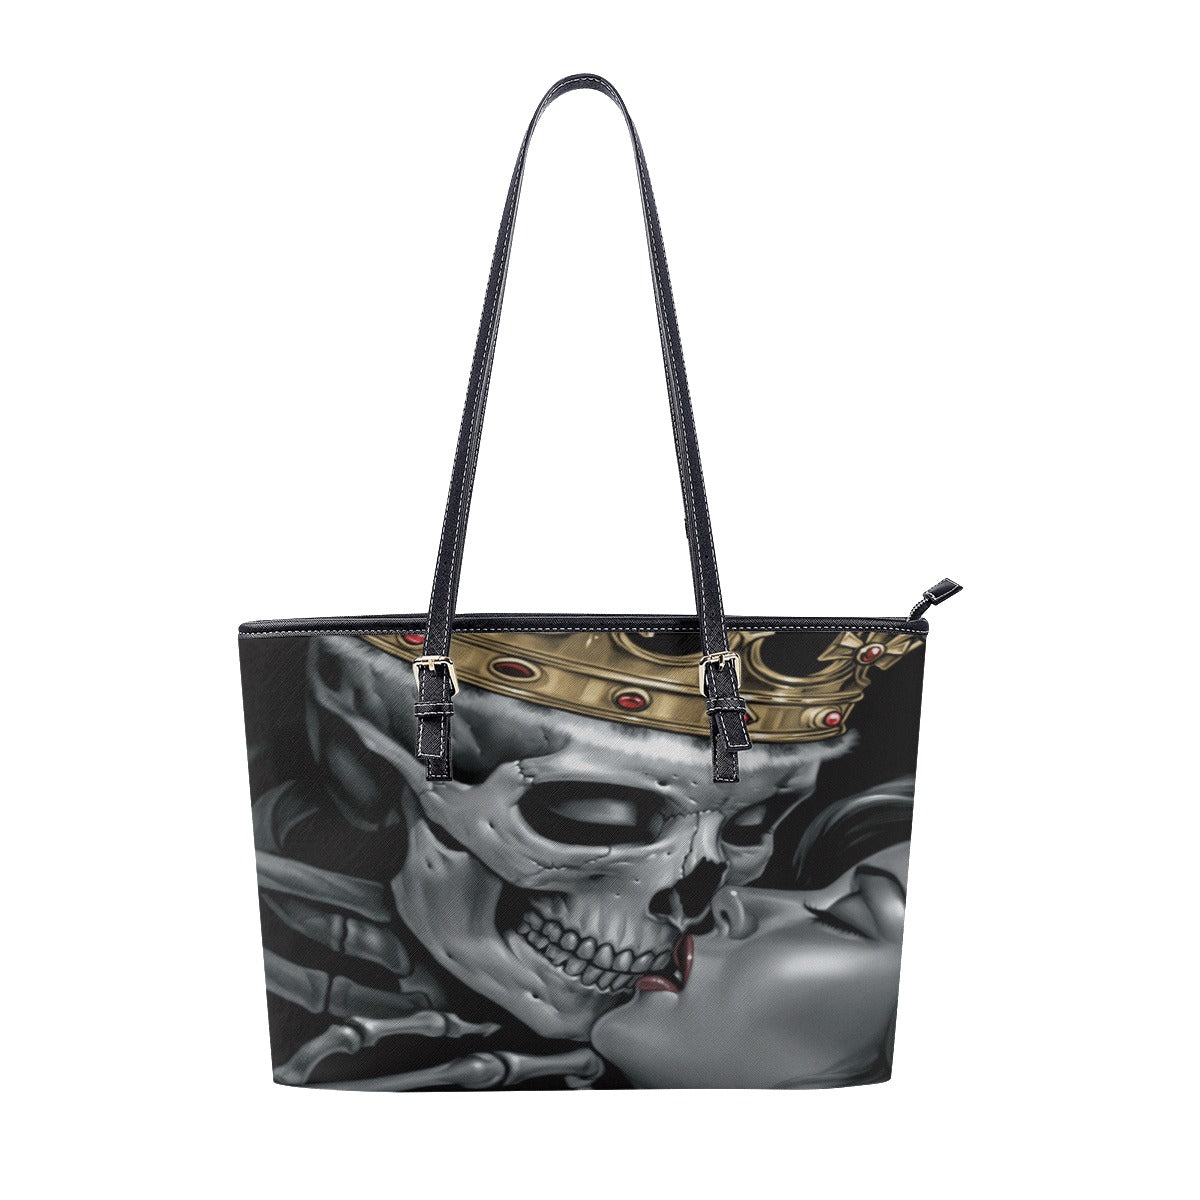 Gothic KING skull kisses queen Women's Tote Bag, skeleton halloween handbag tote bag